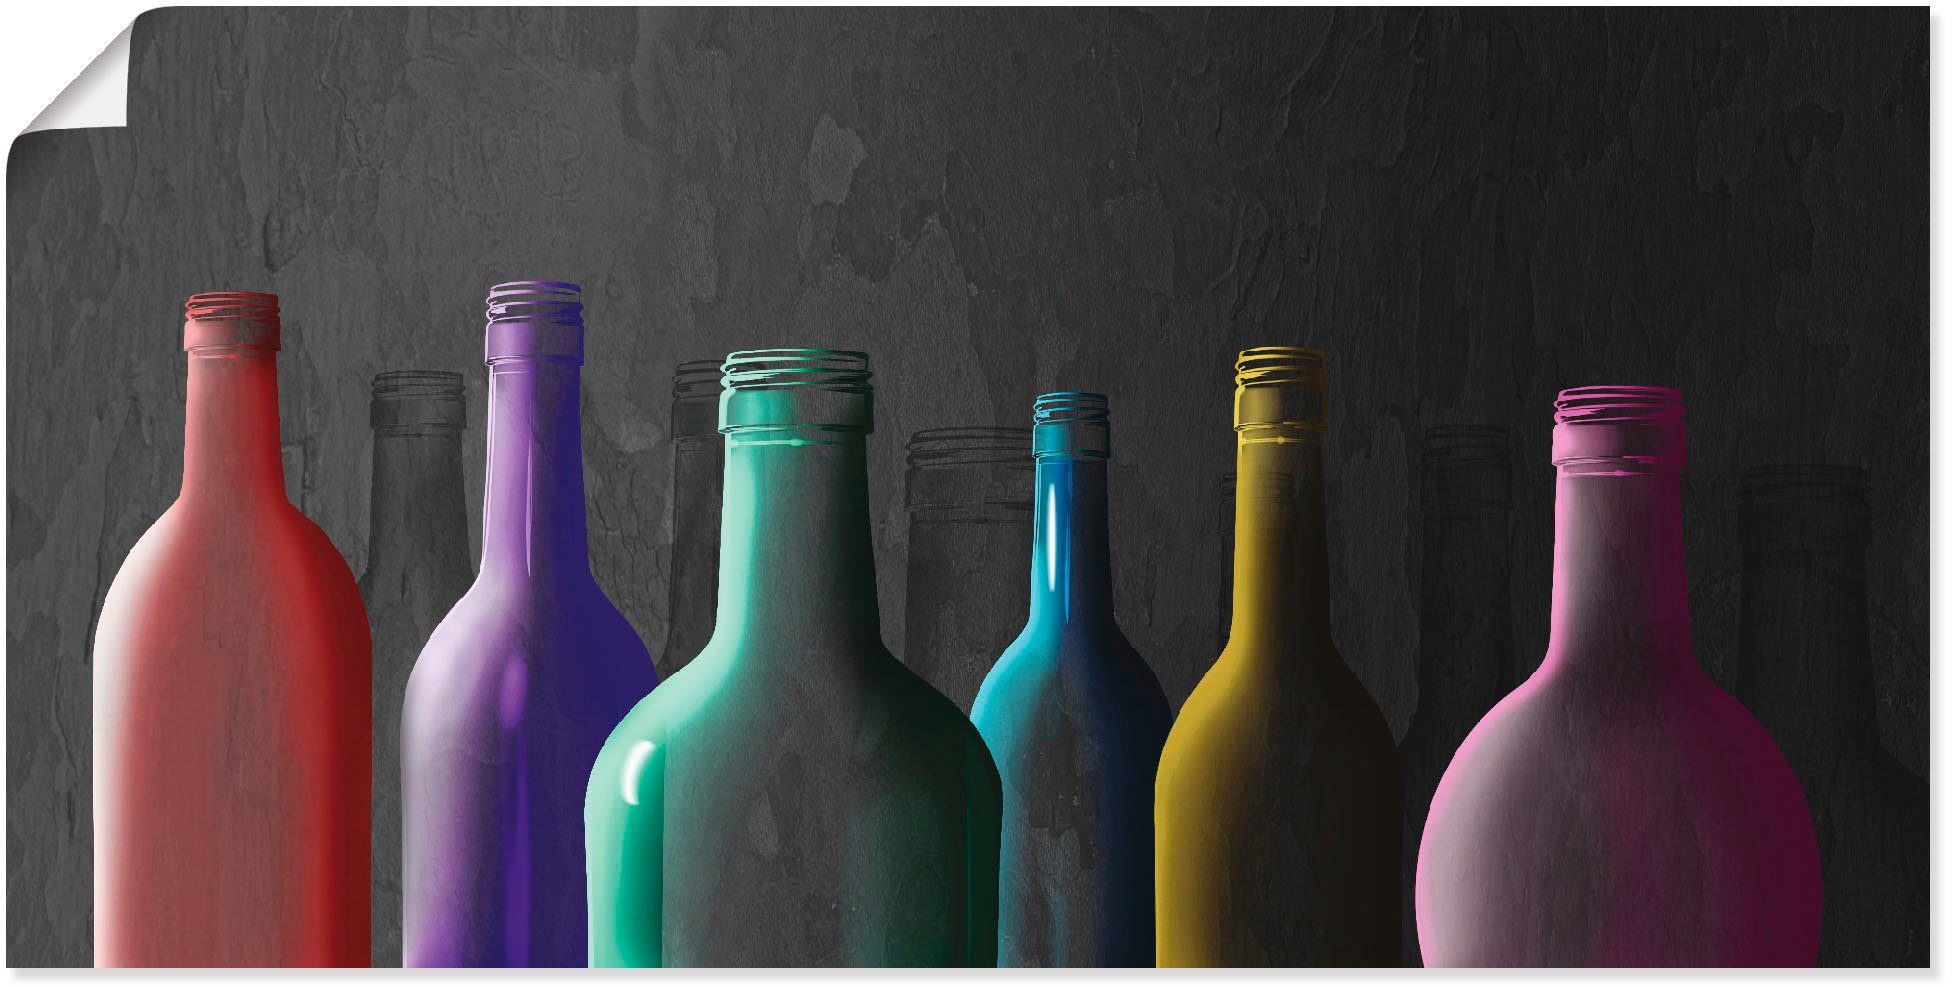 Artland Artprint Veelkleurige glazen flessen in vele afmetingen & productsoorten - artprint van aluminium / artprint voor buiten, artprint op linnen, poster, muursticker / wandfoli